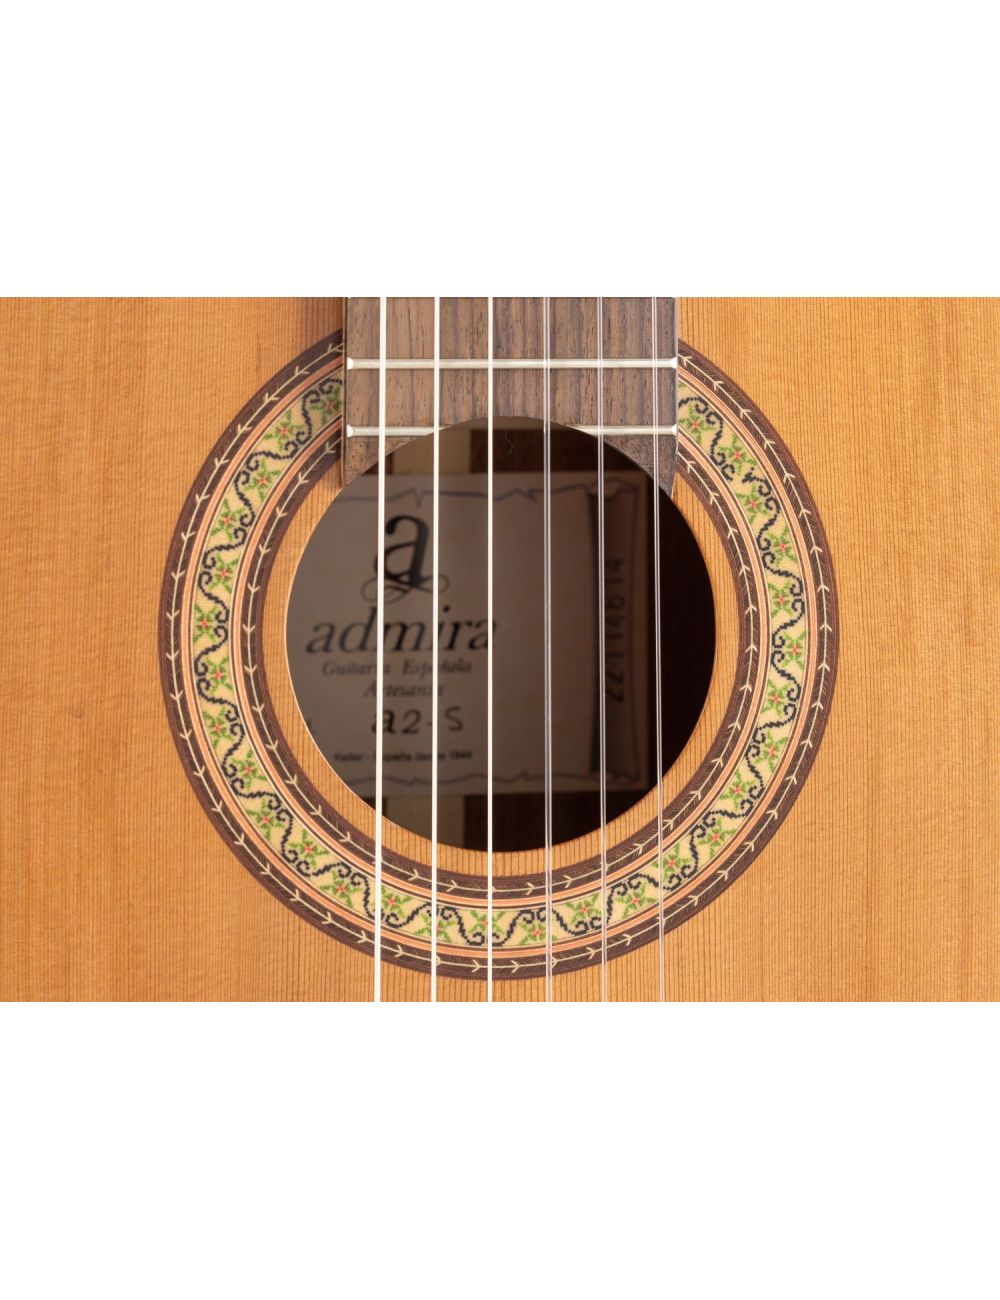 Admira A2 S Classical guitar ADM02S Classical Studio